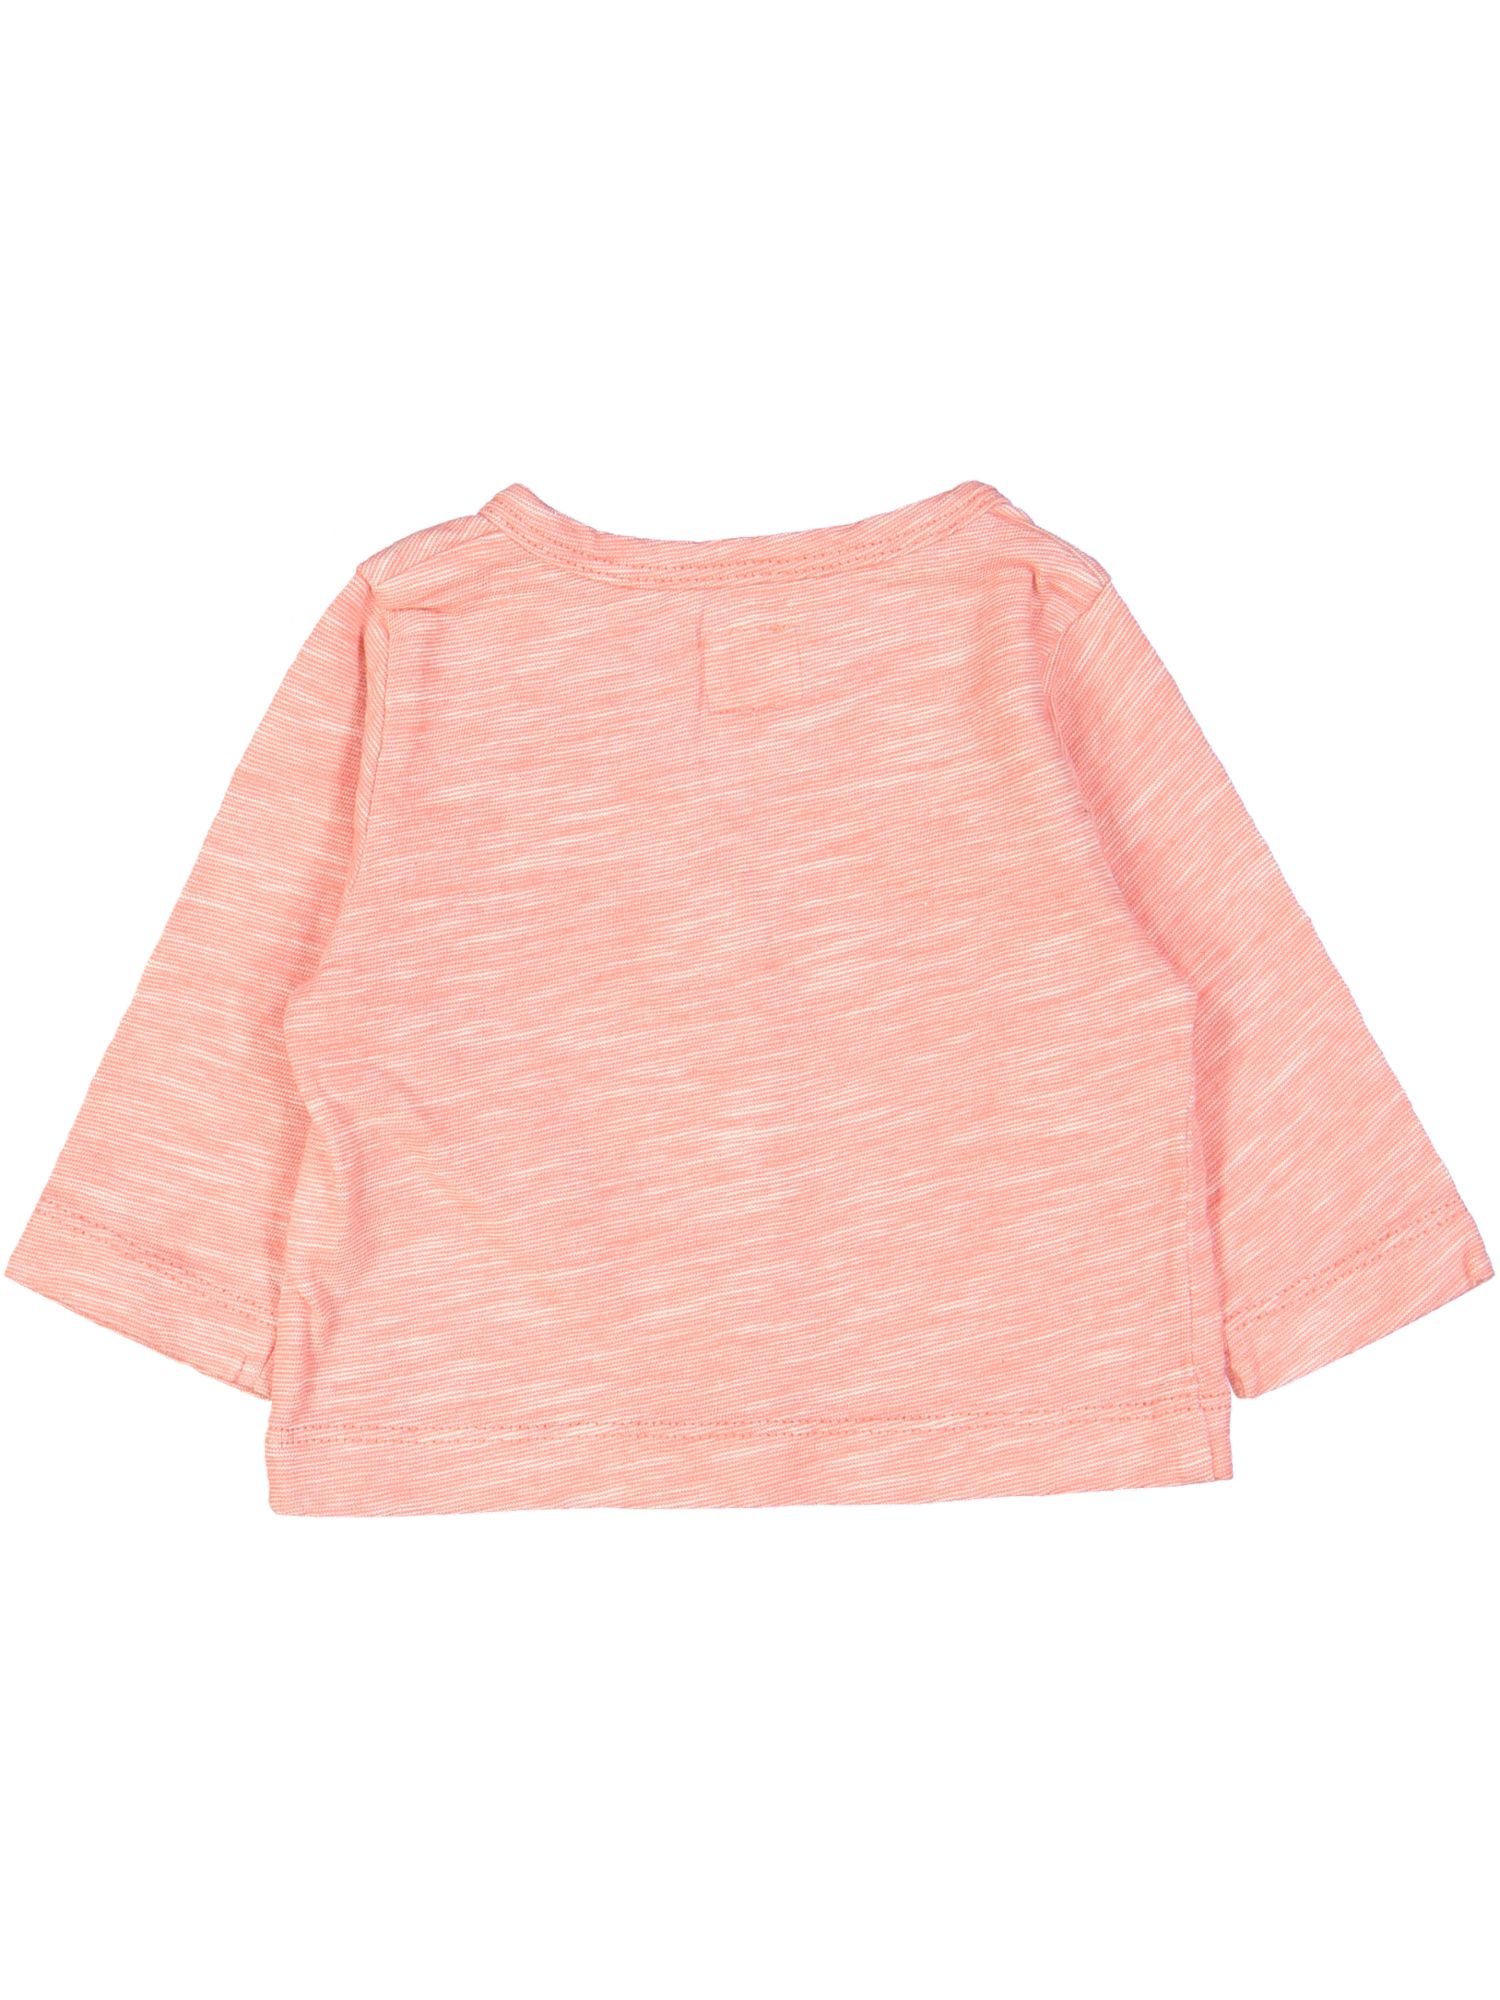 gilet tricot roze chiné 01m .